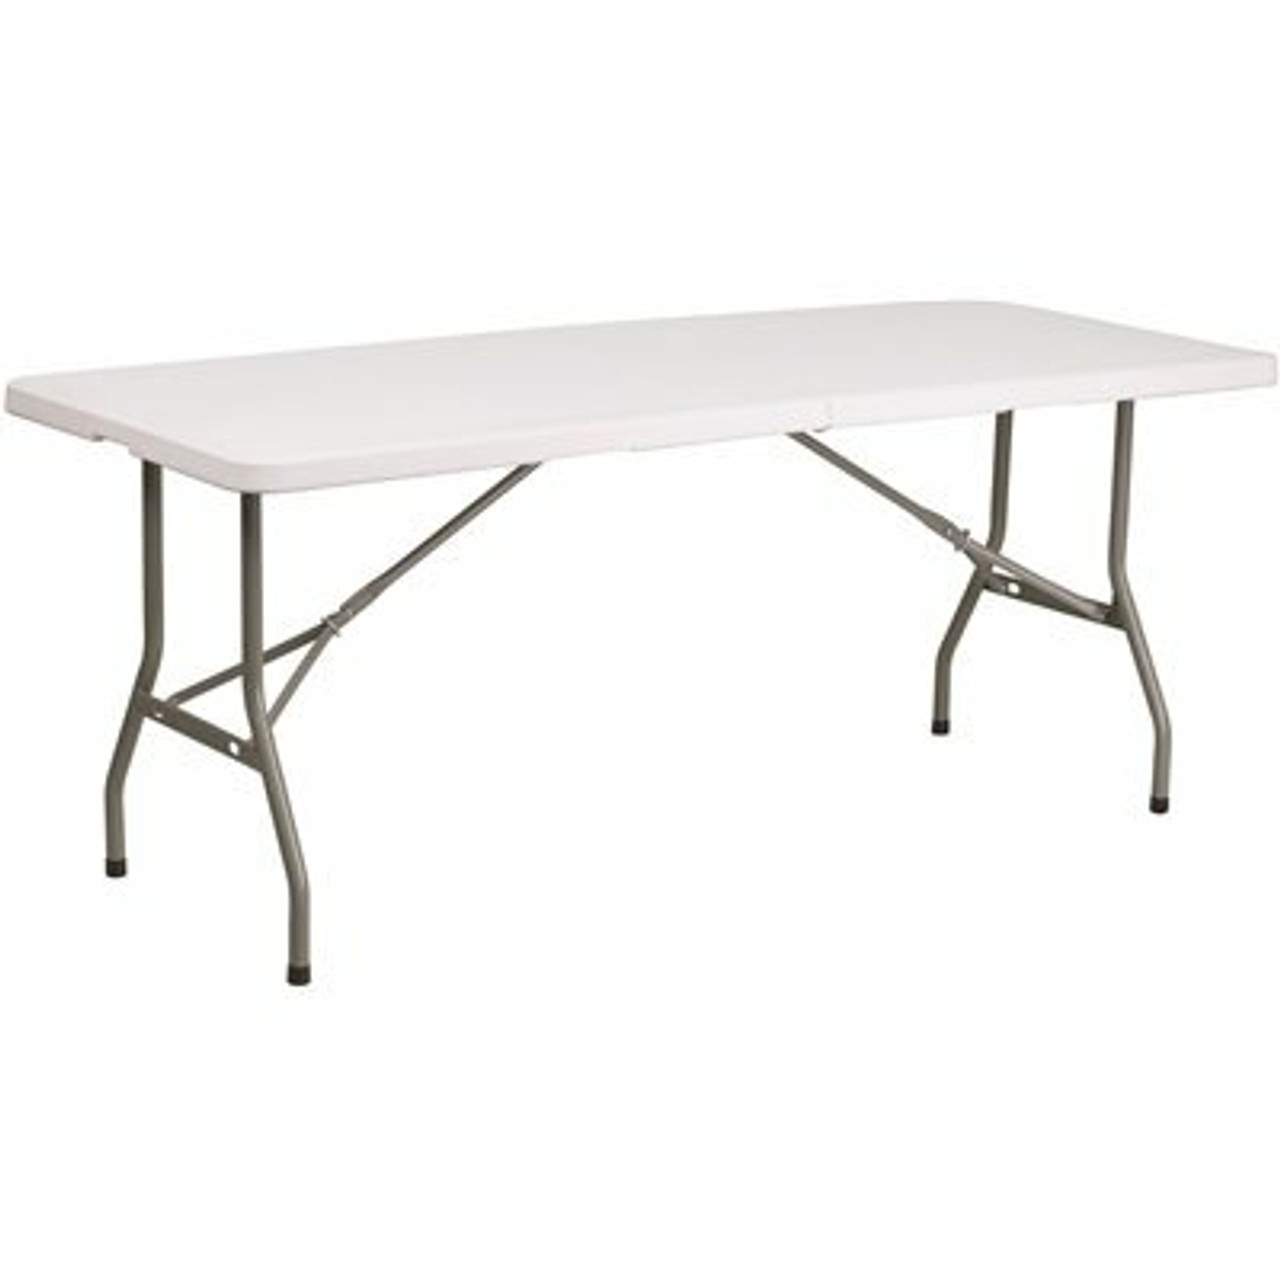 72 In. Granite White Plastic Tabletop Metal Frame Folding Table - 308688188